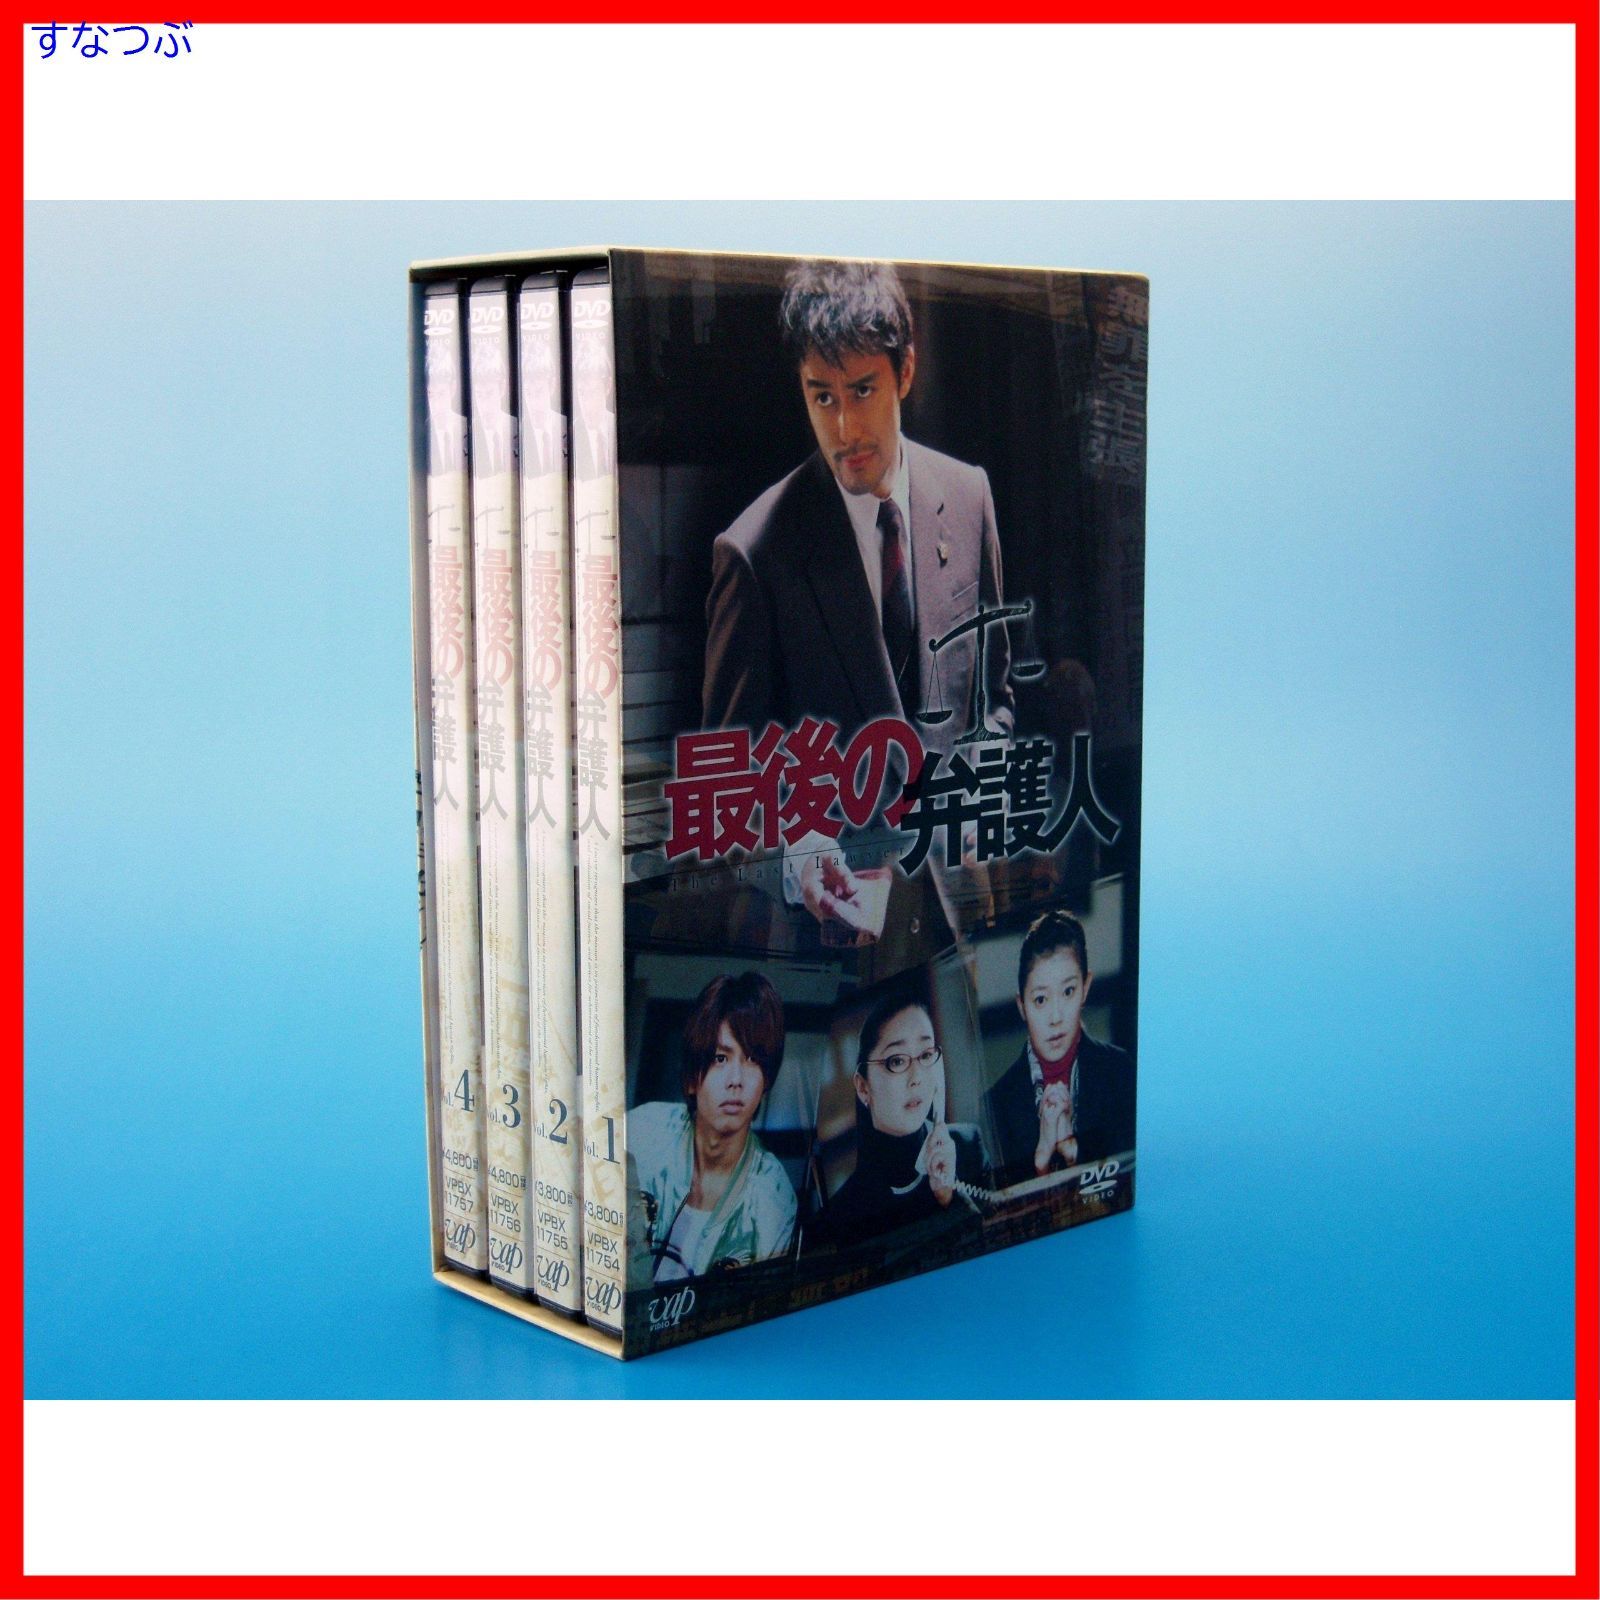 【新品未開封】最後の弁護人 DVD-BOX 阿部寛 (出演) 須藤理彩 (出演) 形式: DVD